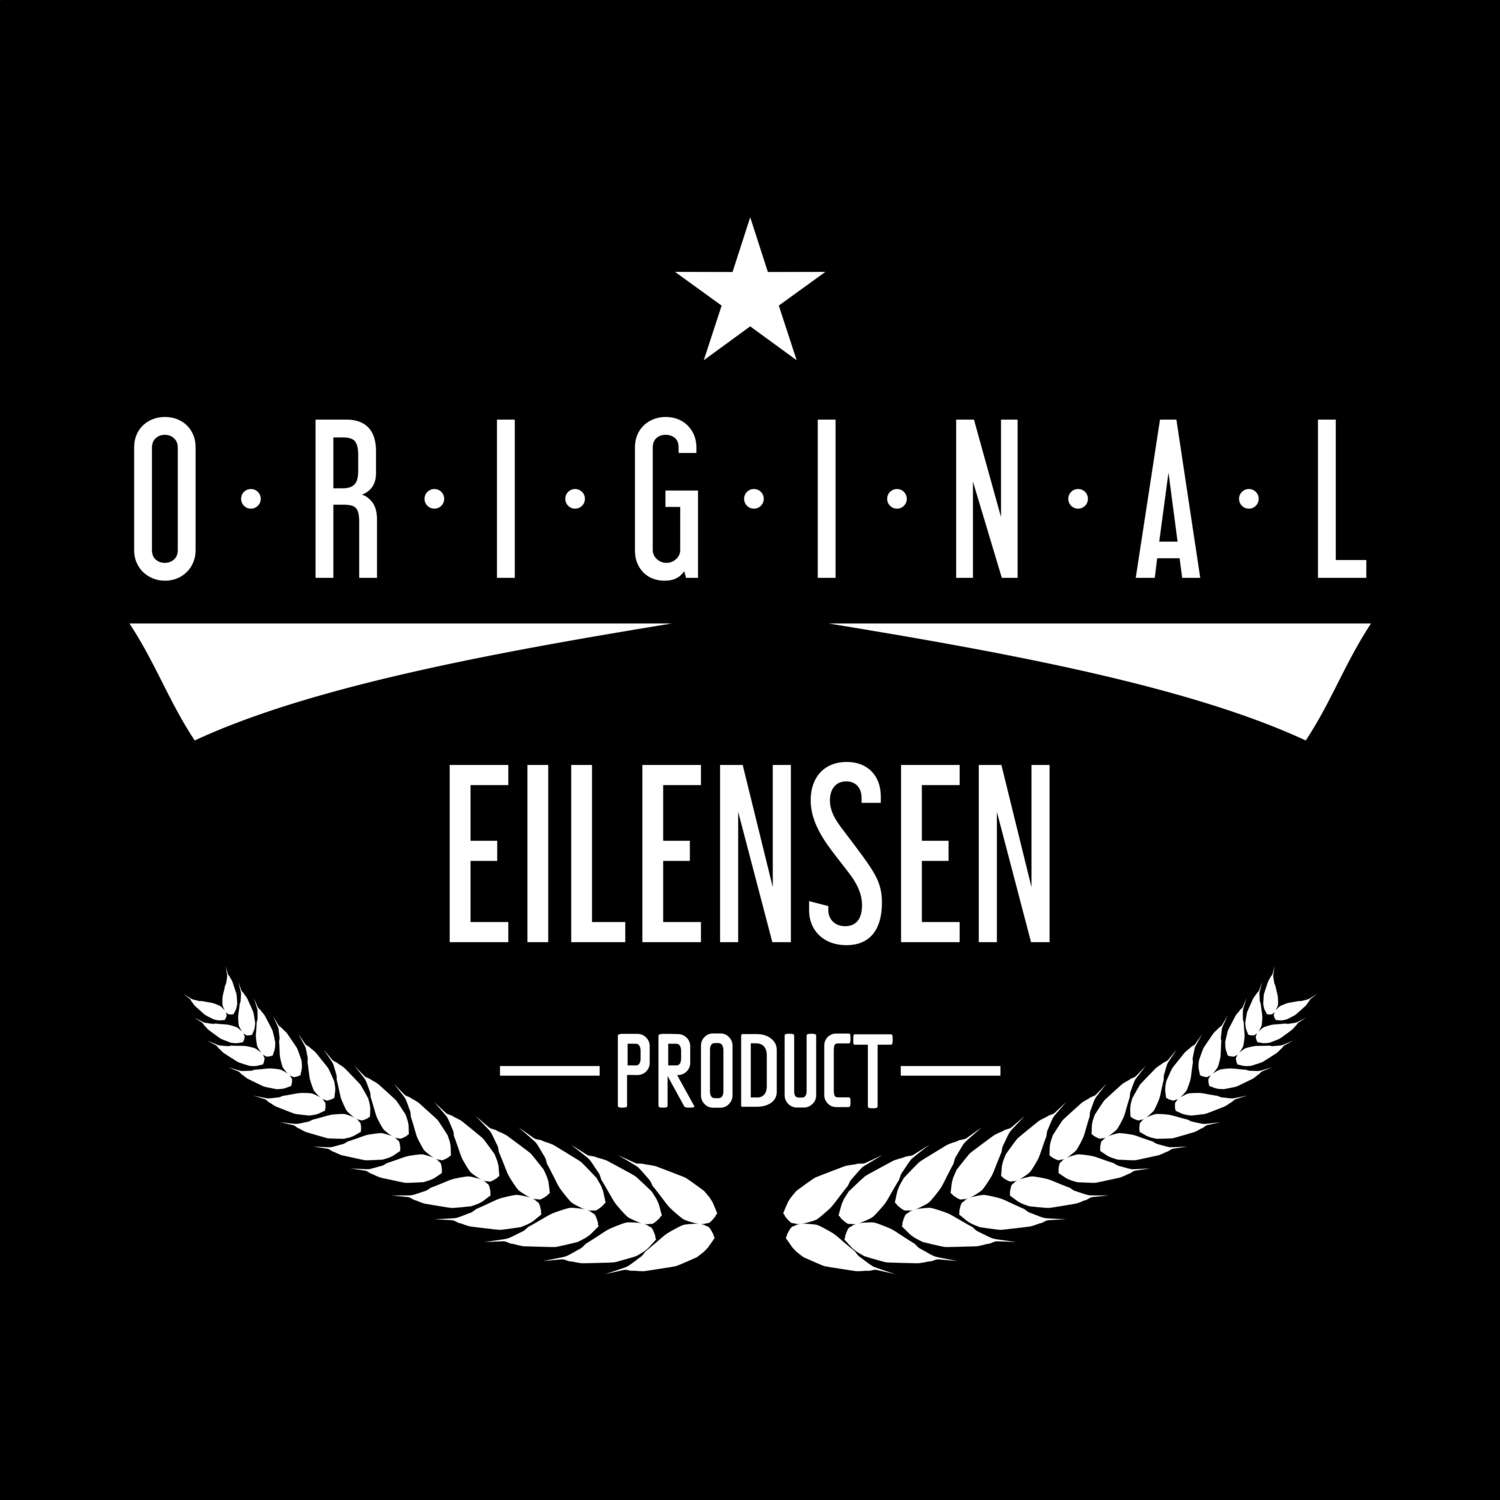 Eilensen T-Shirt »Original Product«